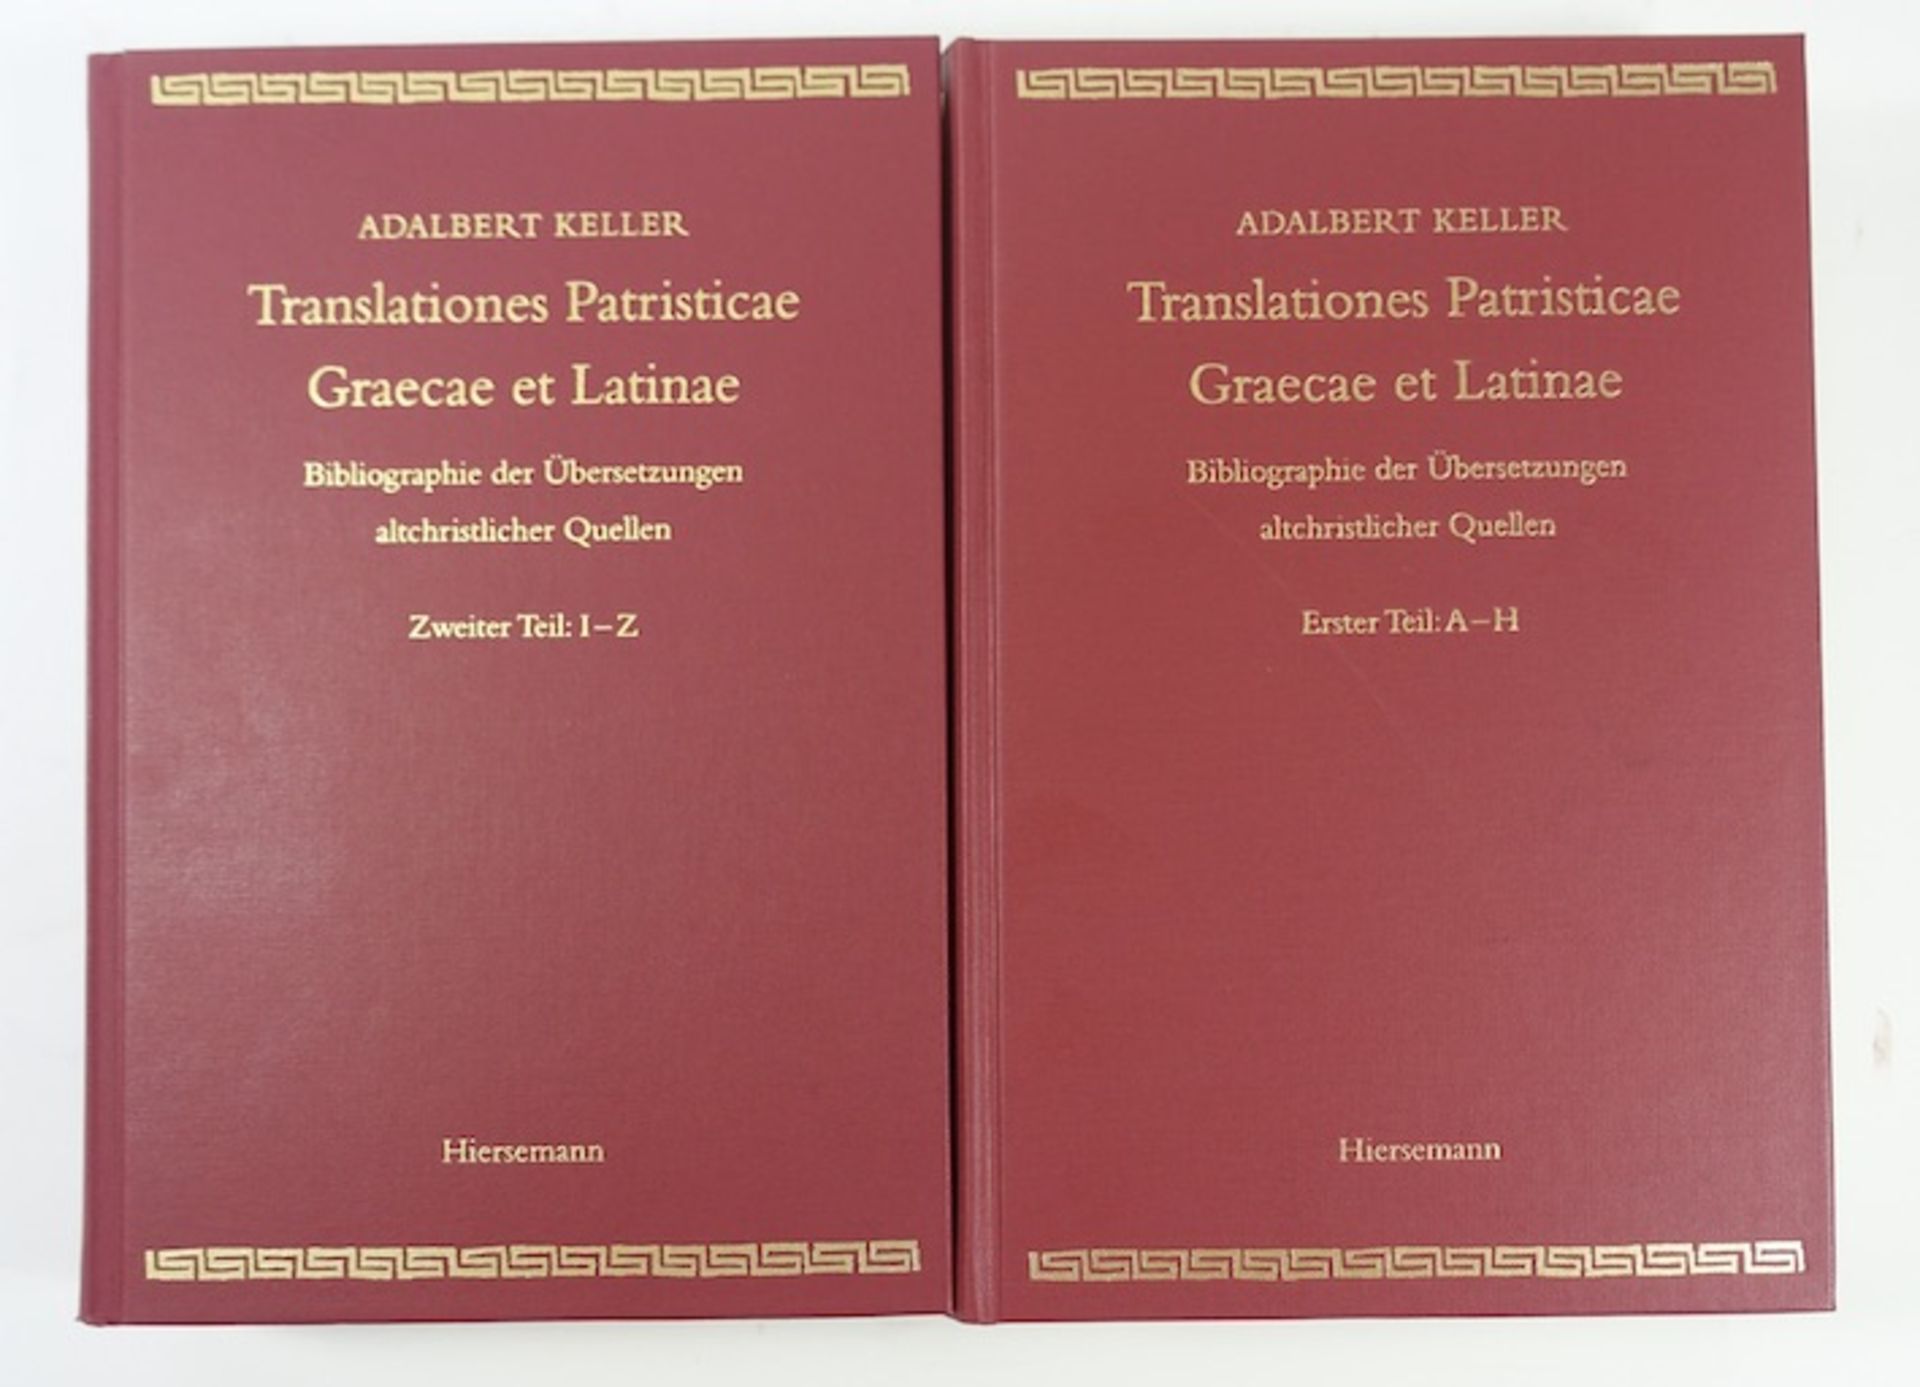 KELLER, A. Translationes patristicae Graecae et Latinae. Bibliographie der Übersetzungen